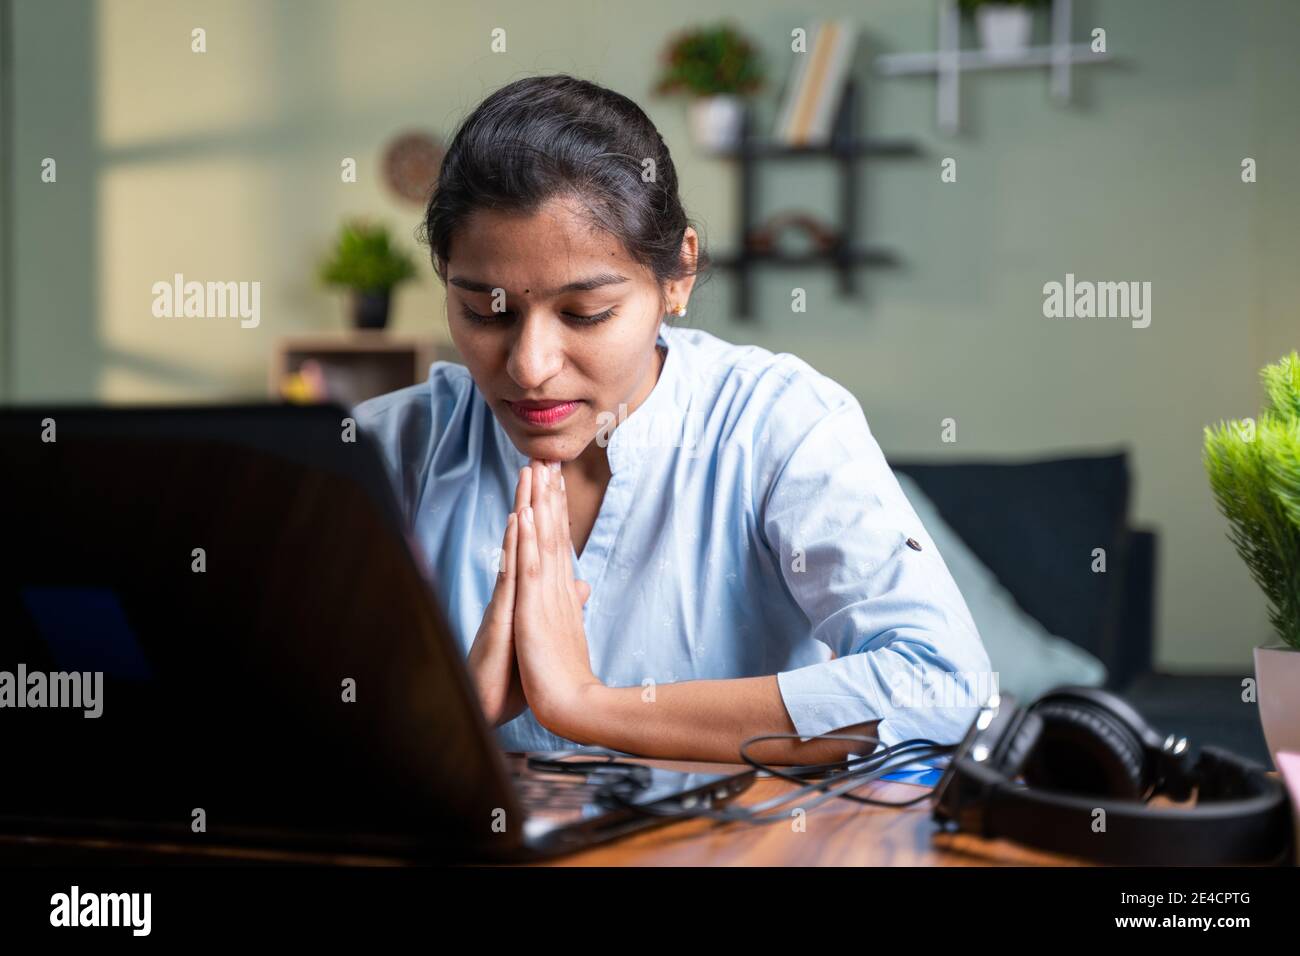 Junge Geschäftsfrau beten vor dem Laptop nach Abschluss der Online-Test oder Prüfung für Ergebnisse - Konzept des Glaubens, Dankbarkeit in gott Stockfoto